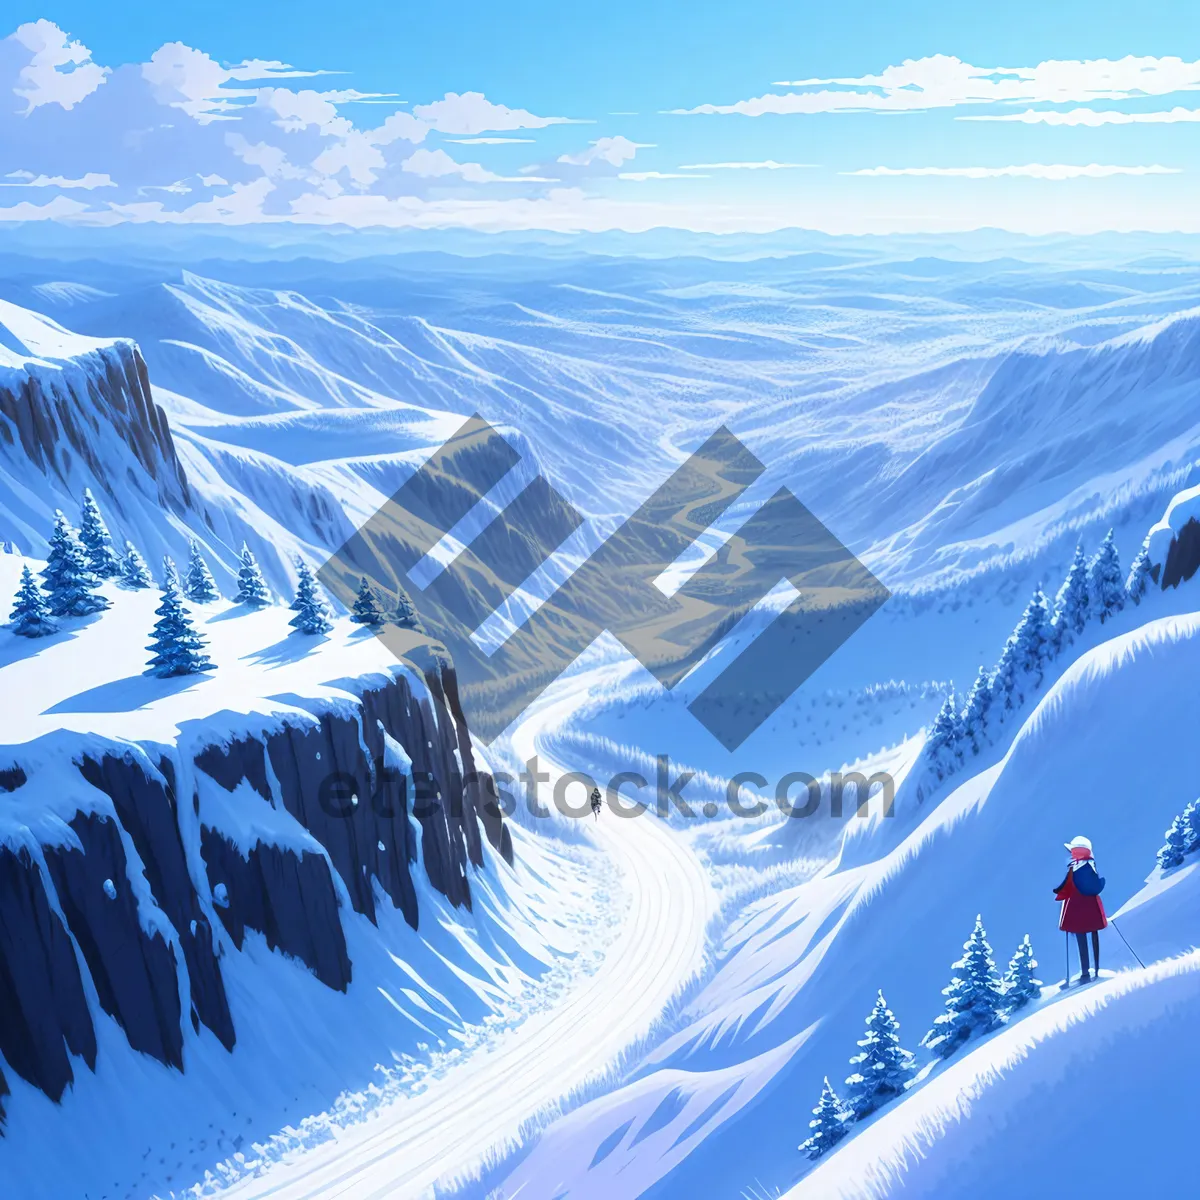 Picture of Snowy Glacier Peak in Majestic Alpine Landscape